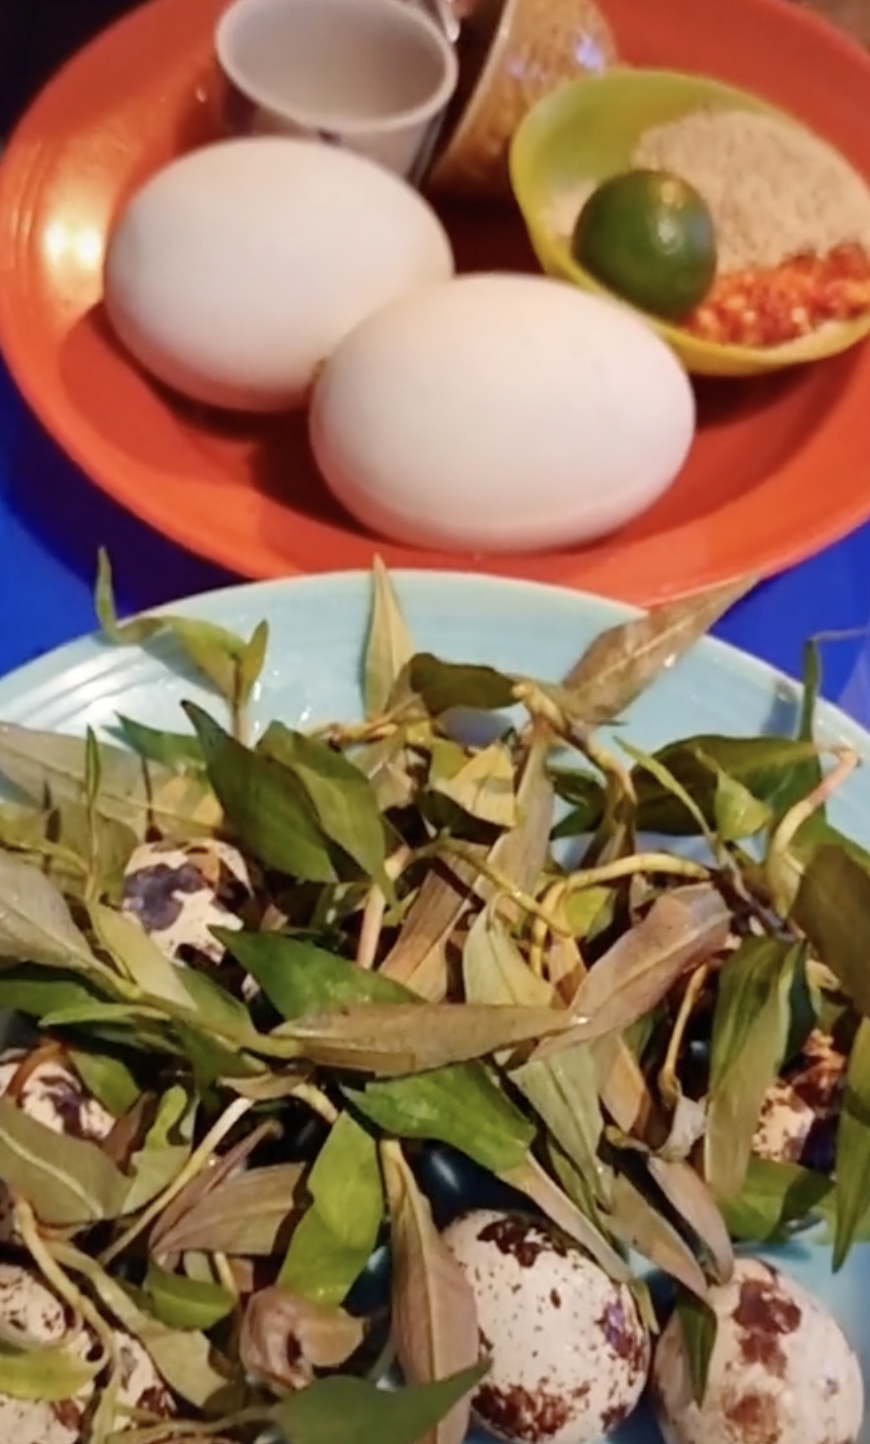 Quán trứng vịt lộn có hương vị đặc trưng, hút thực khách ngày bán cả nghìn quả - Ảnh 4.